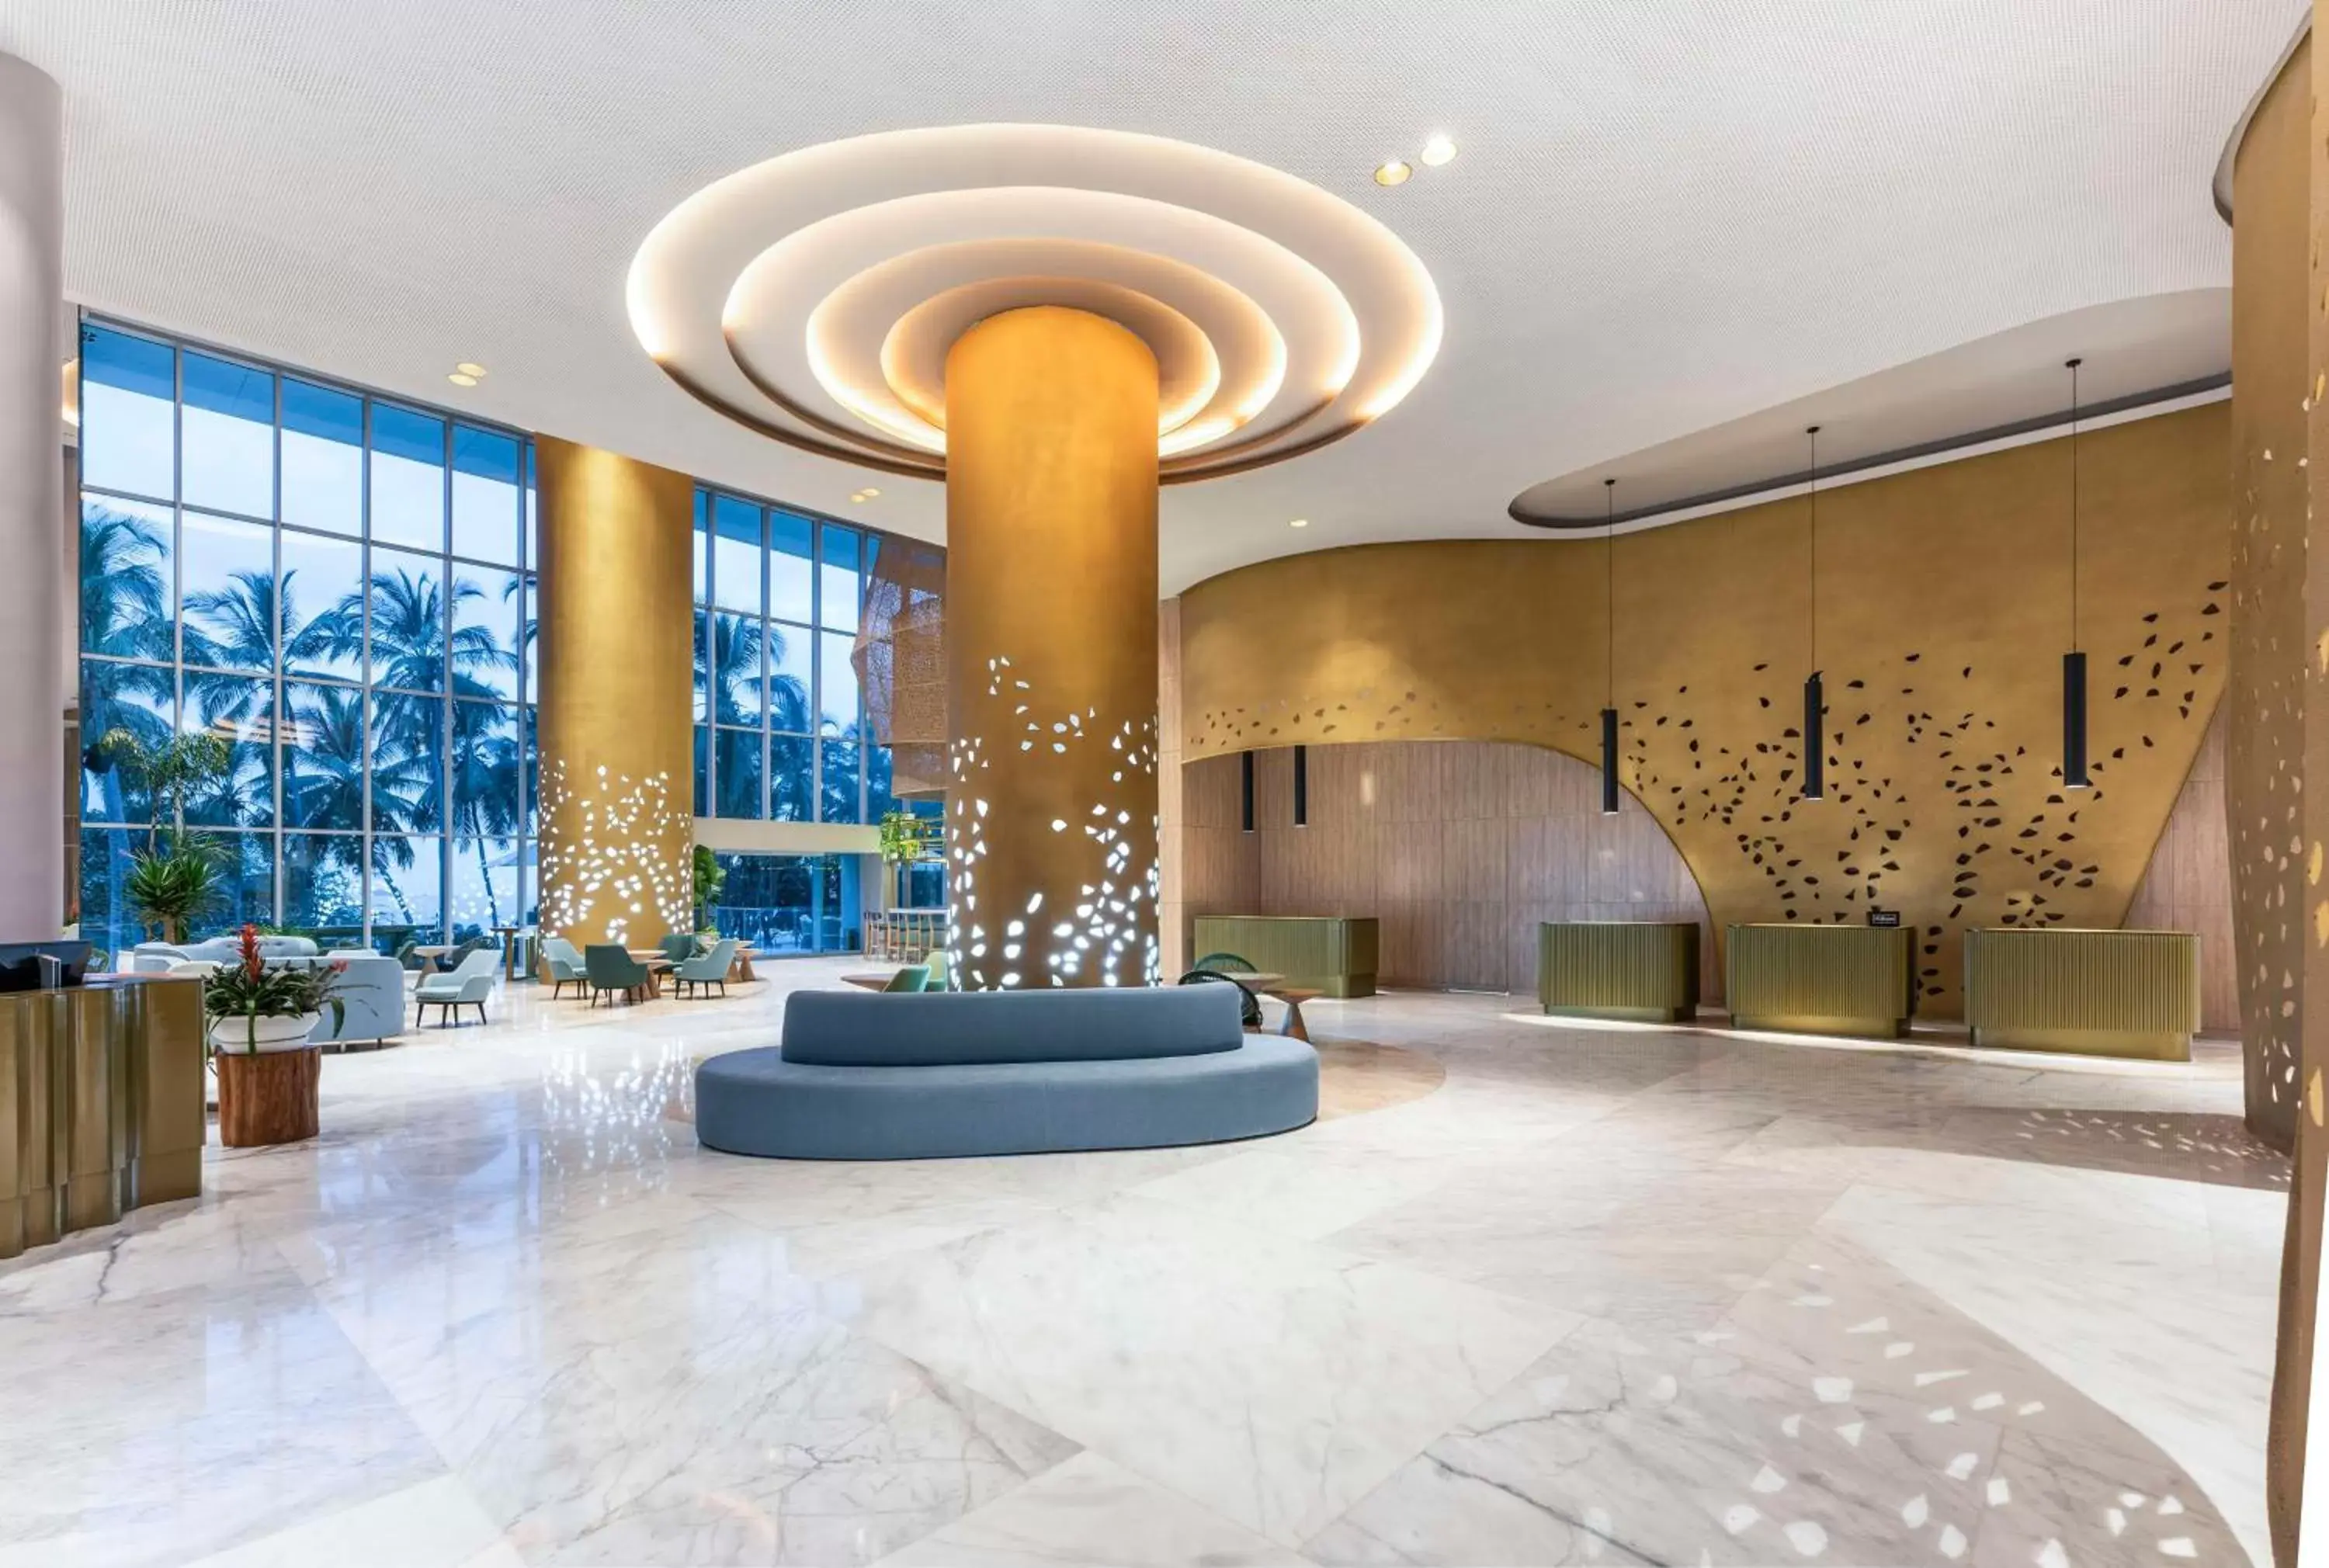 Lobby or reception, Lobby/Reception in Hilton Santa Marta